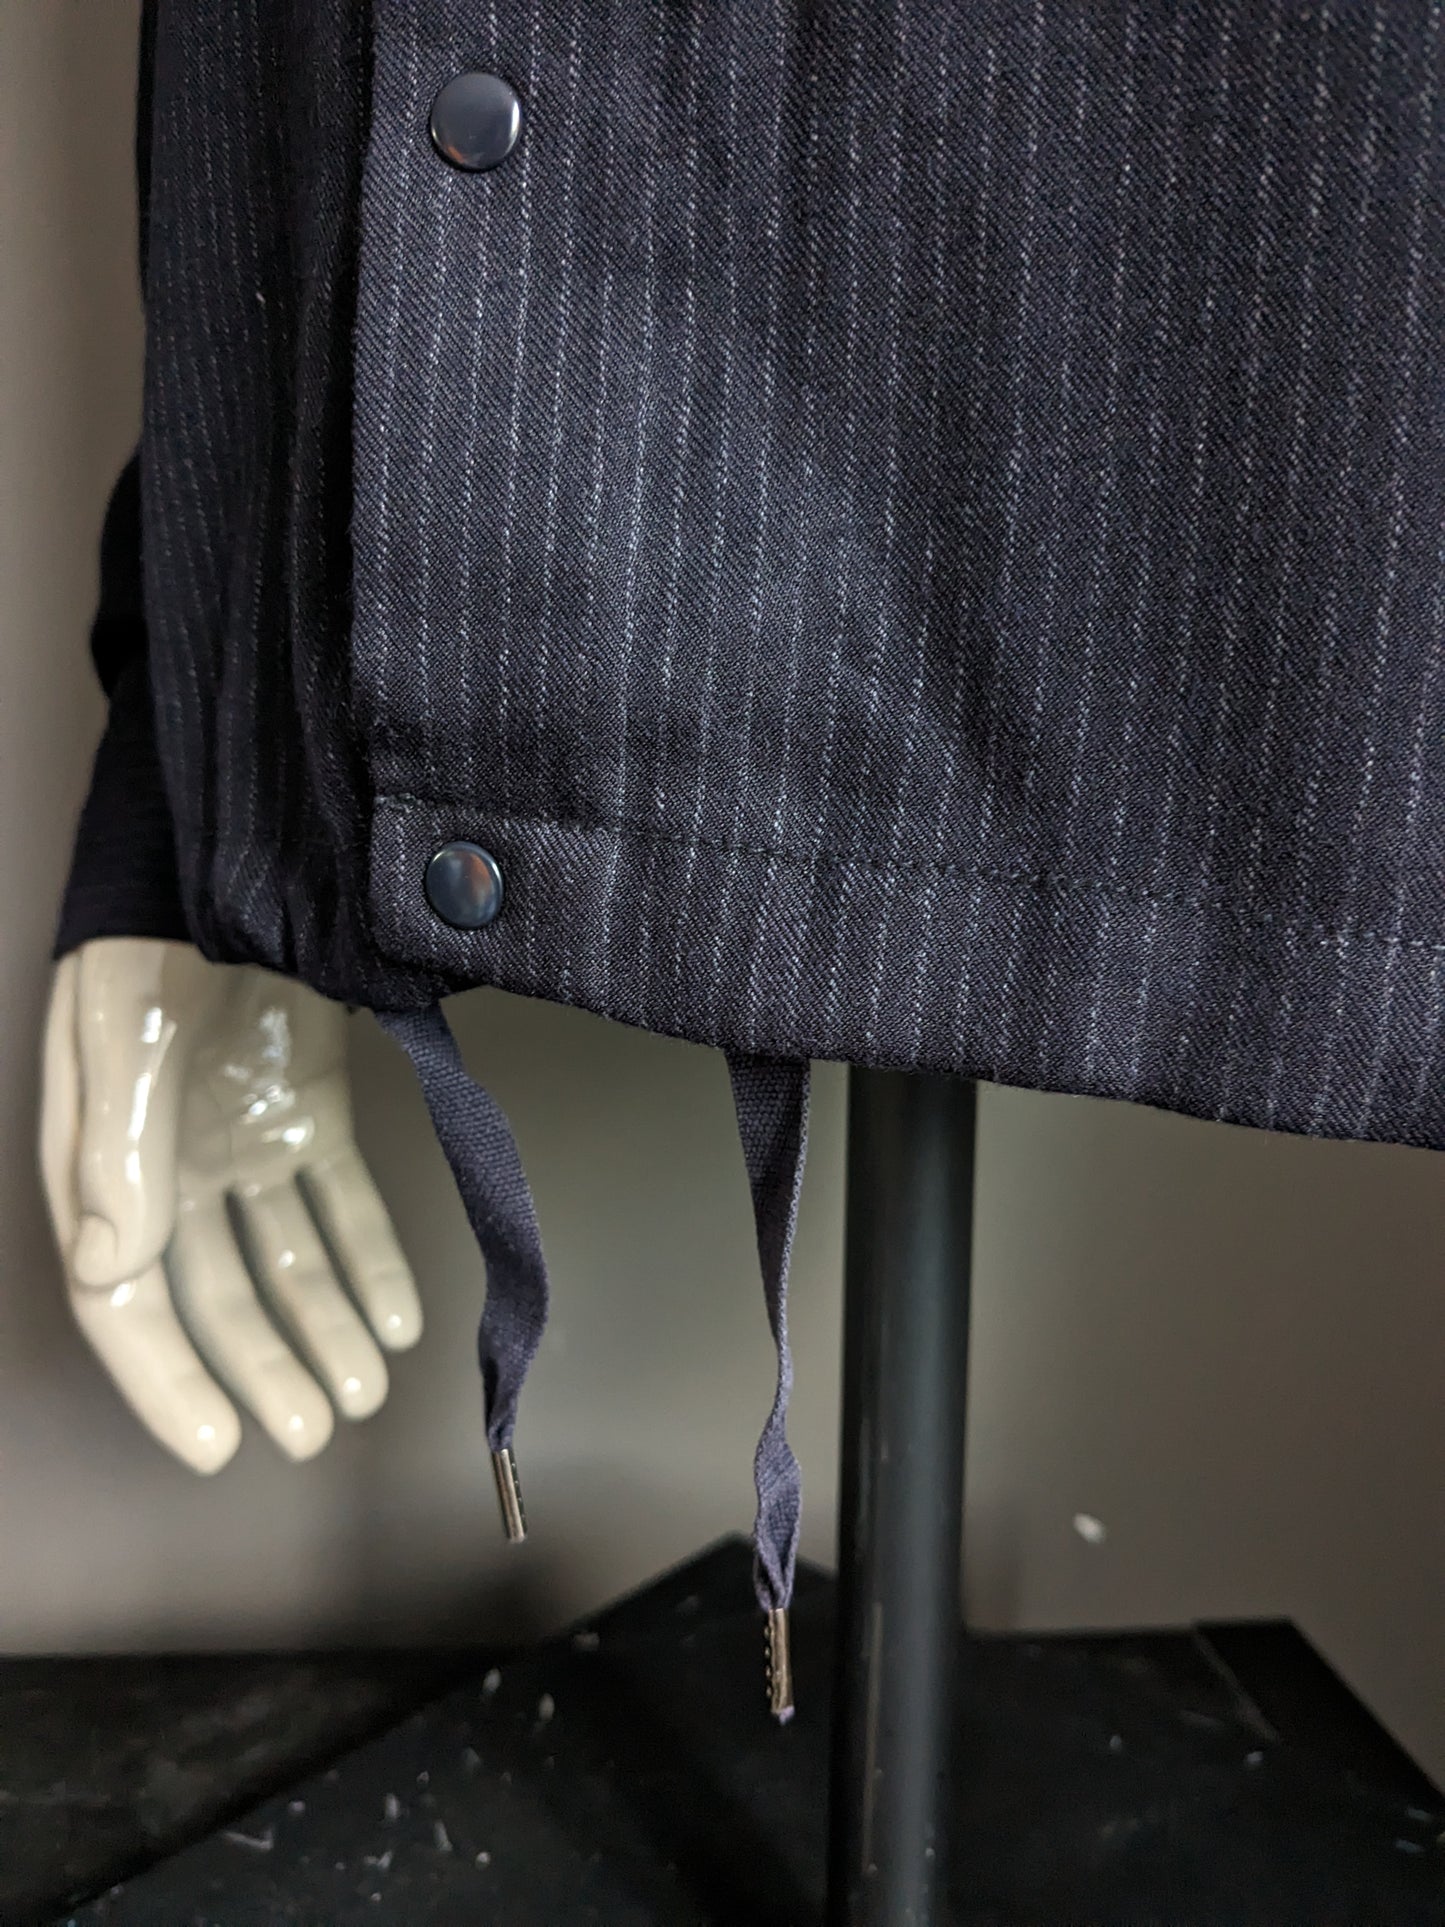 La chaqueta / camisa de la verdad con pernos de prensa. Blanco azul oscuro rayado. Talla M.